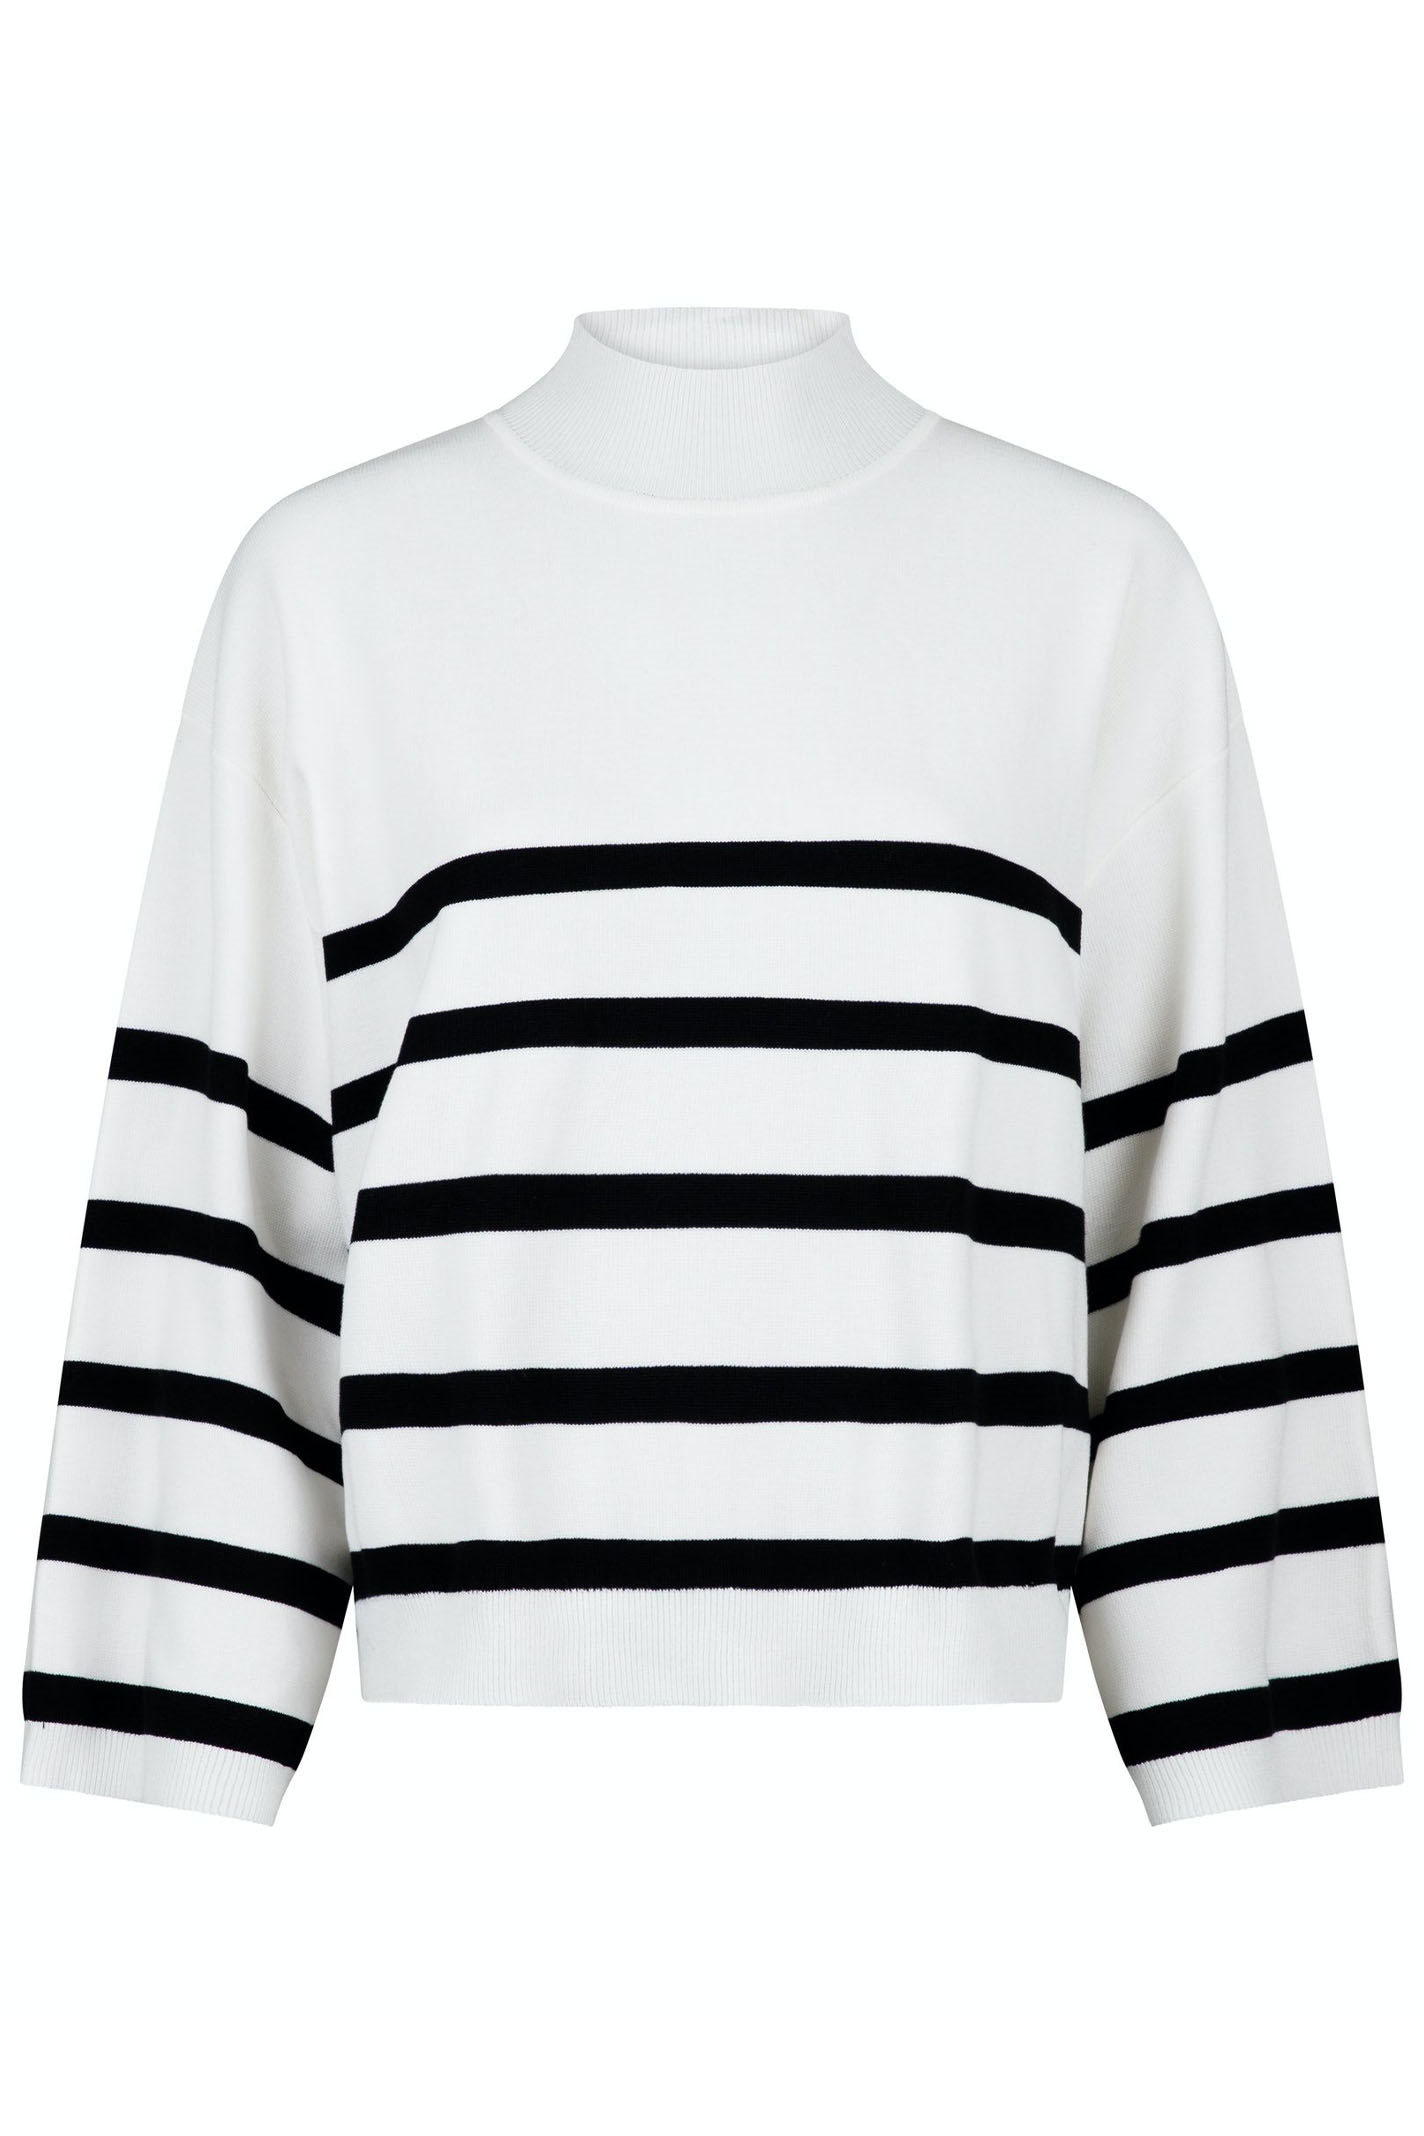 Fru Signal galdeblæren Neo Noir tøj - Shop Neo Noir bluser, nederdele, bukser & kjoler online hos  Bustedwoman.com